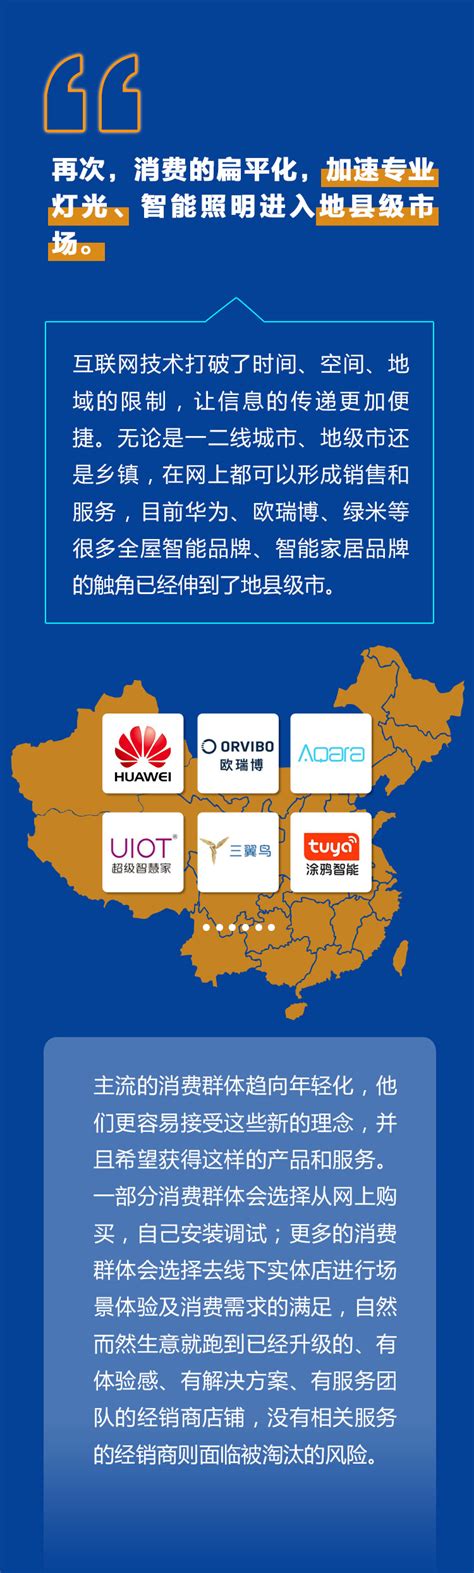 2022年中国LED照明行业发展现状分析，需求市场持续增长，行业发展前景广阔「图」_趋势频道-华经情报网